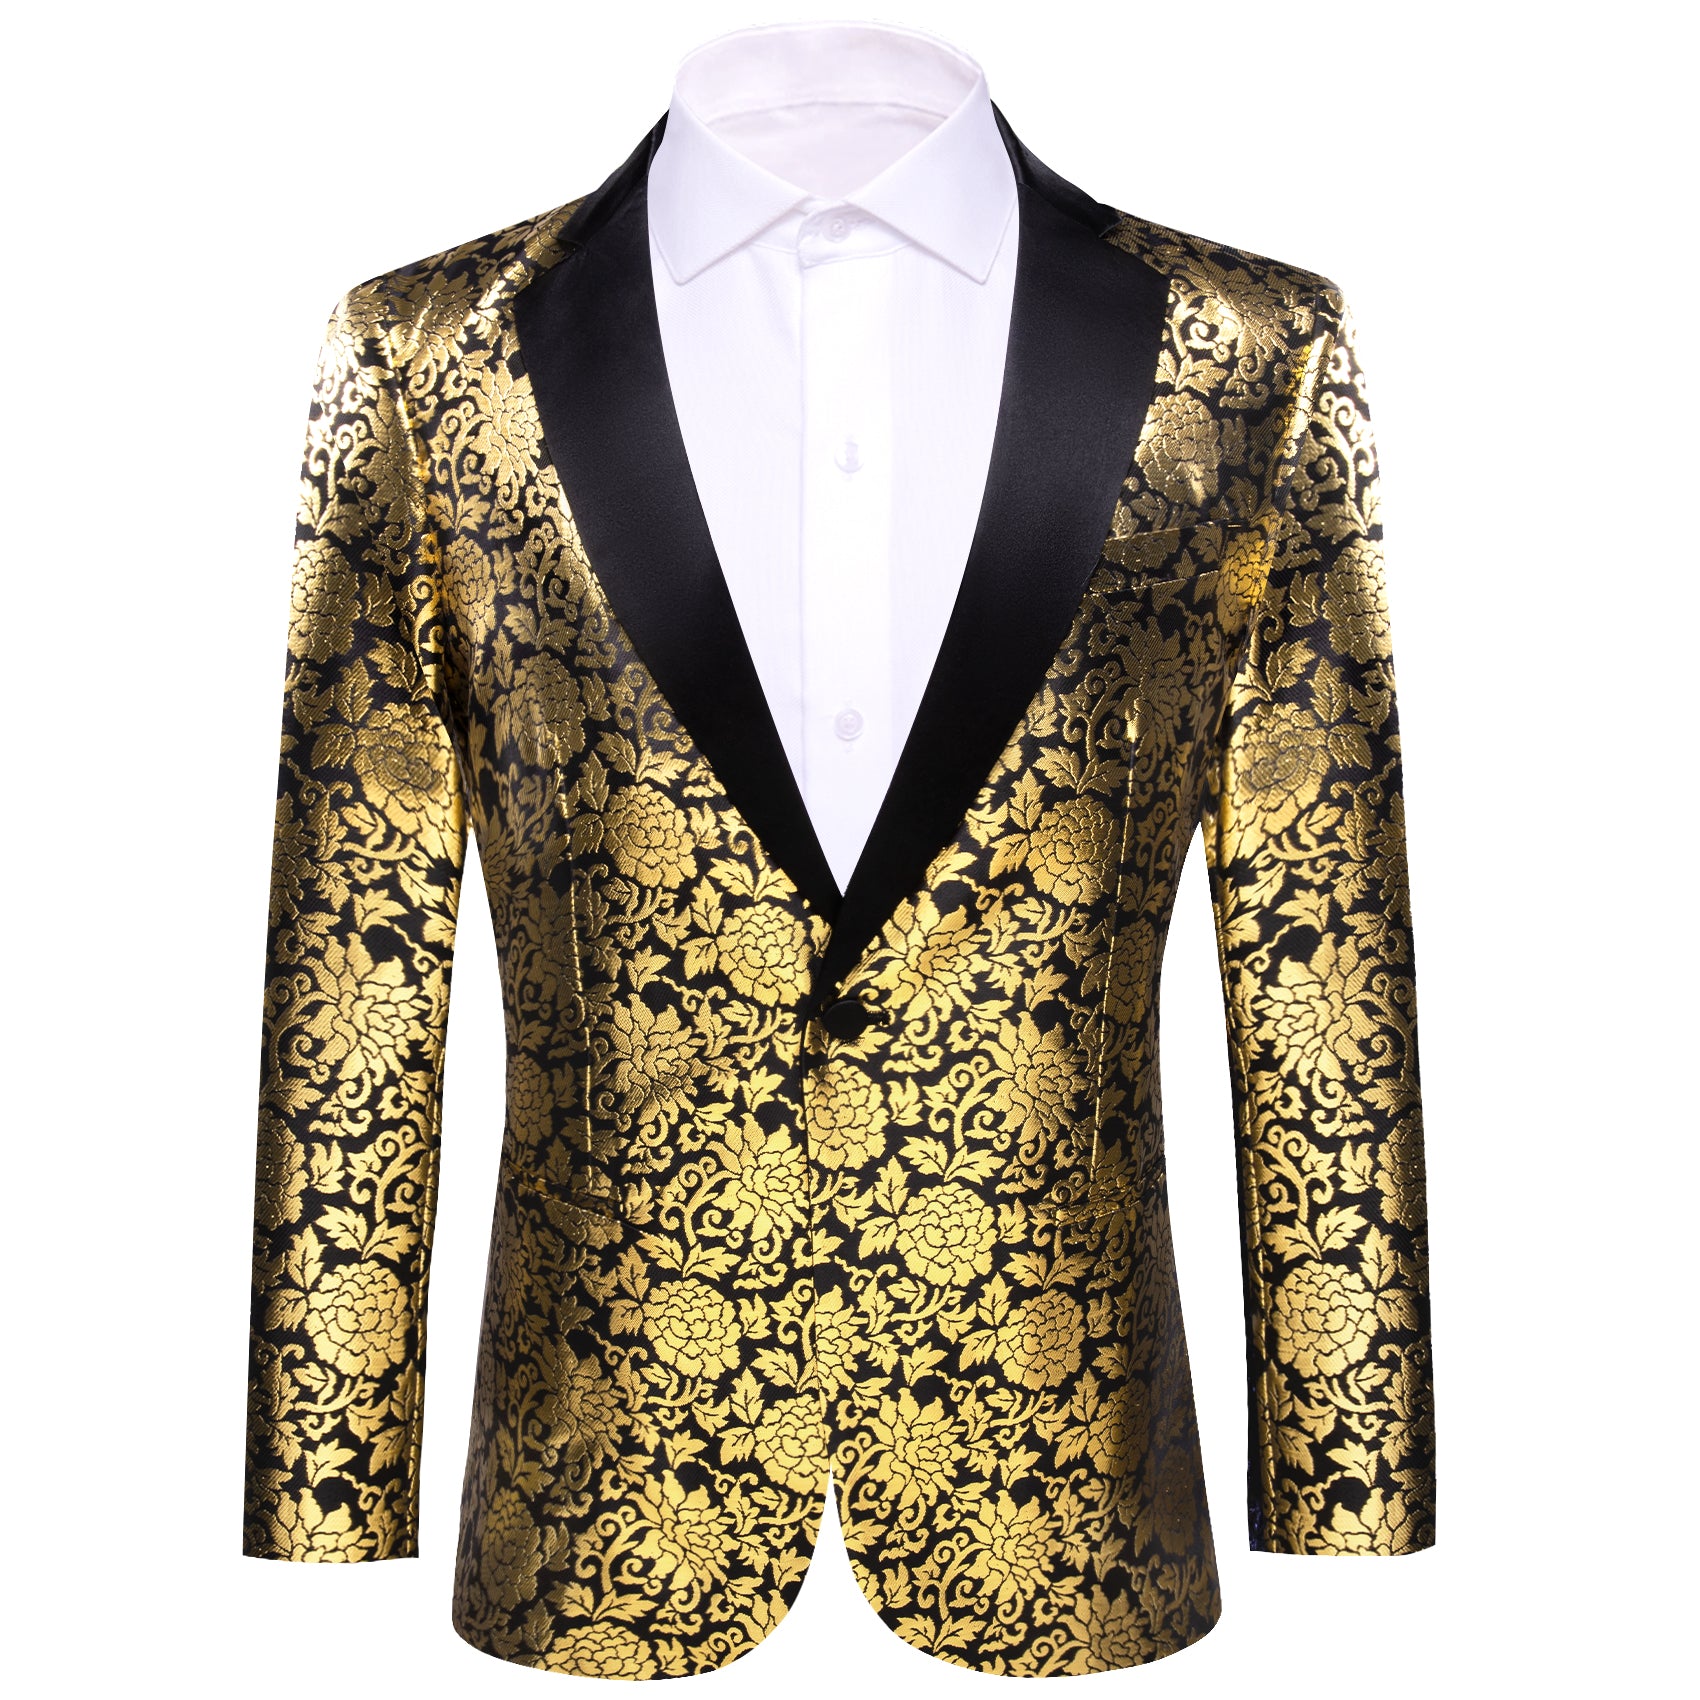 Barry.wang Men's Floral Suit Black Gold Notched Collar Suit Dress Party